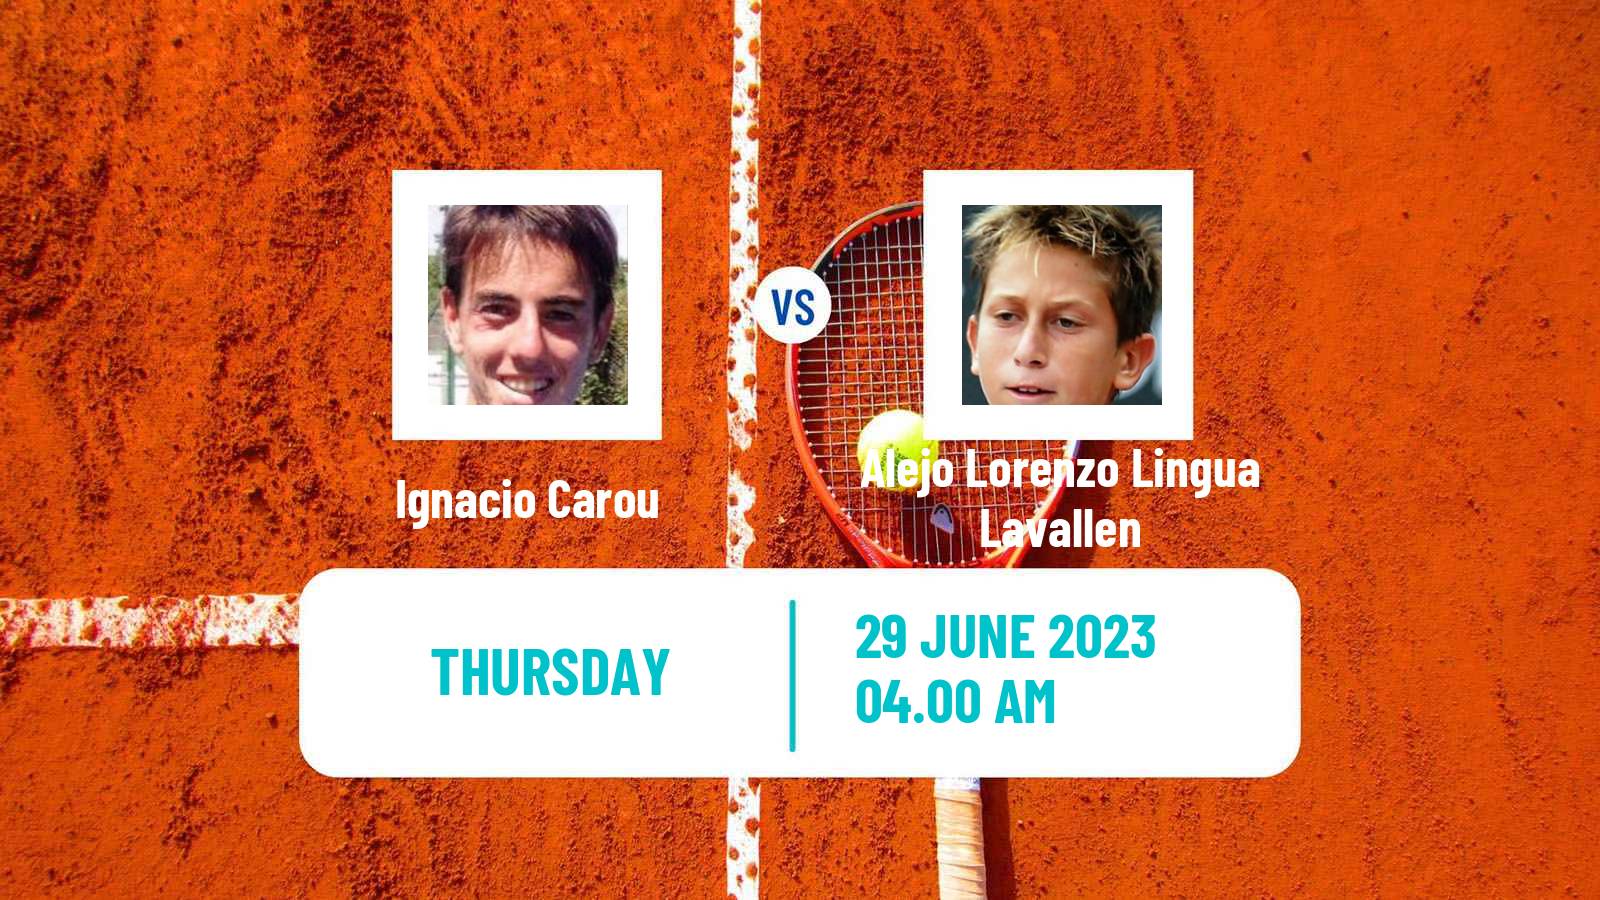 Tennis ITF M25 Rosario Santa Fe Men Ignacio Carou - Alejo Lorenzo Lingua Lavallen